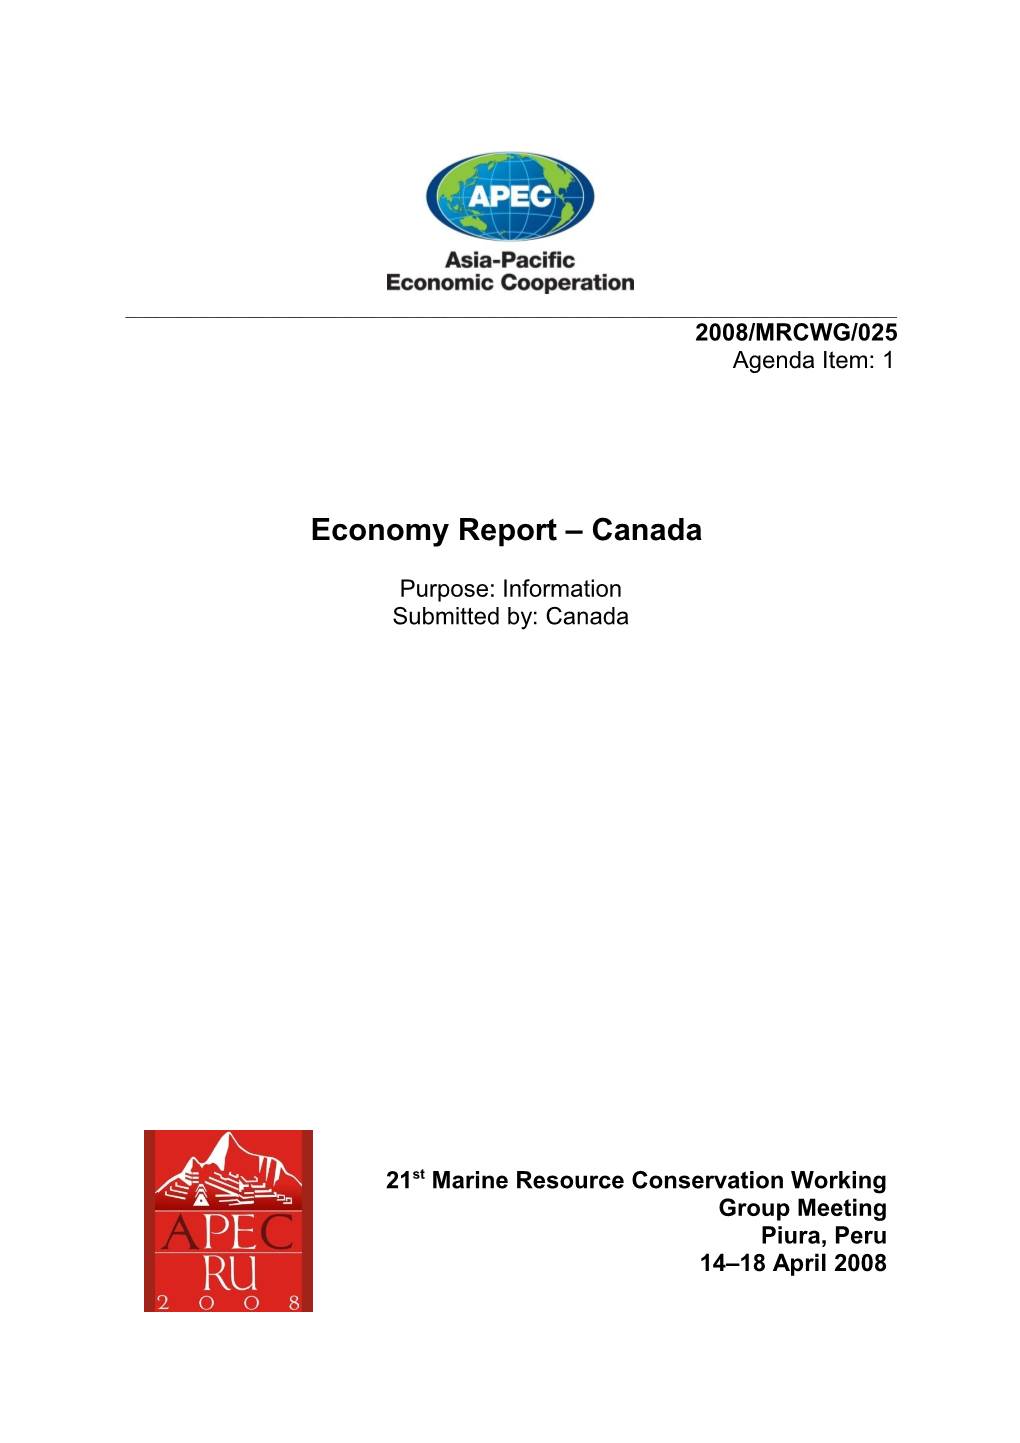 Economy Report Canada